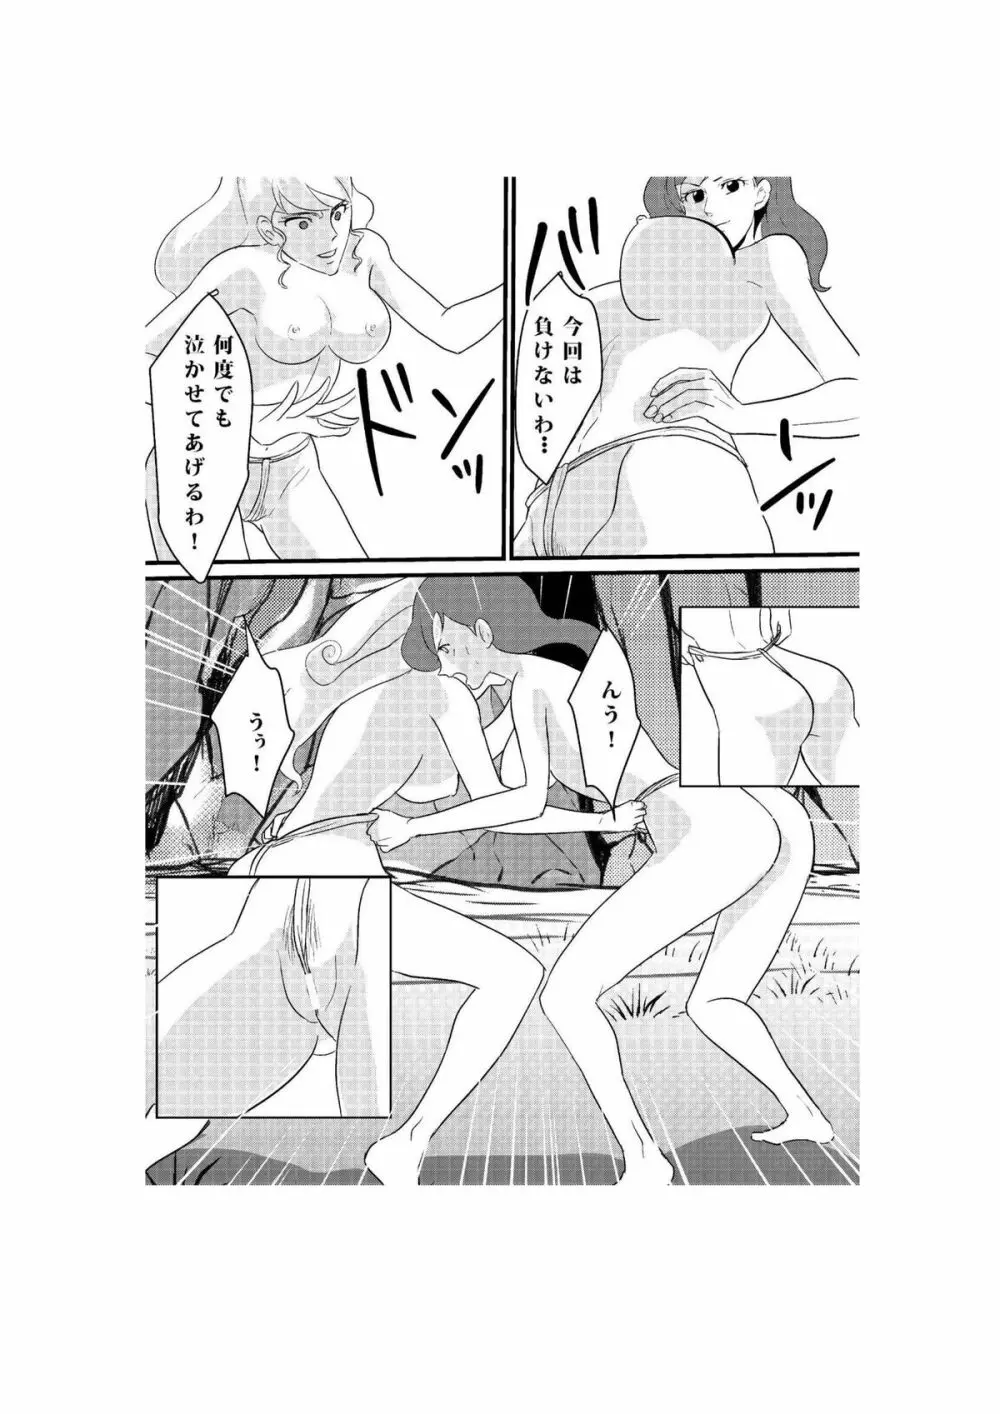 Fushi no Kyouten Ureta Onna no Tatakai - Fujiko VS Emmanuelle - page13